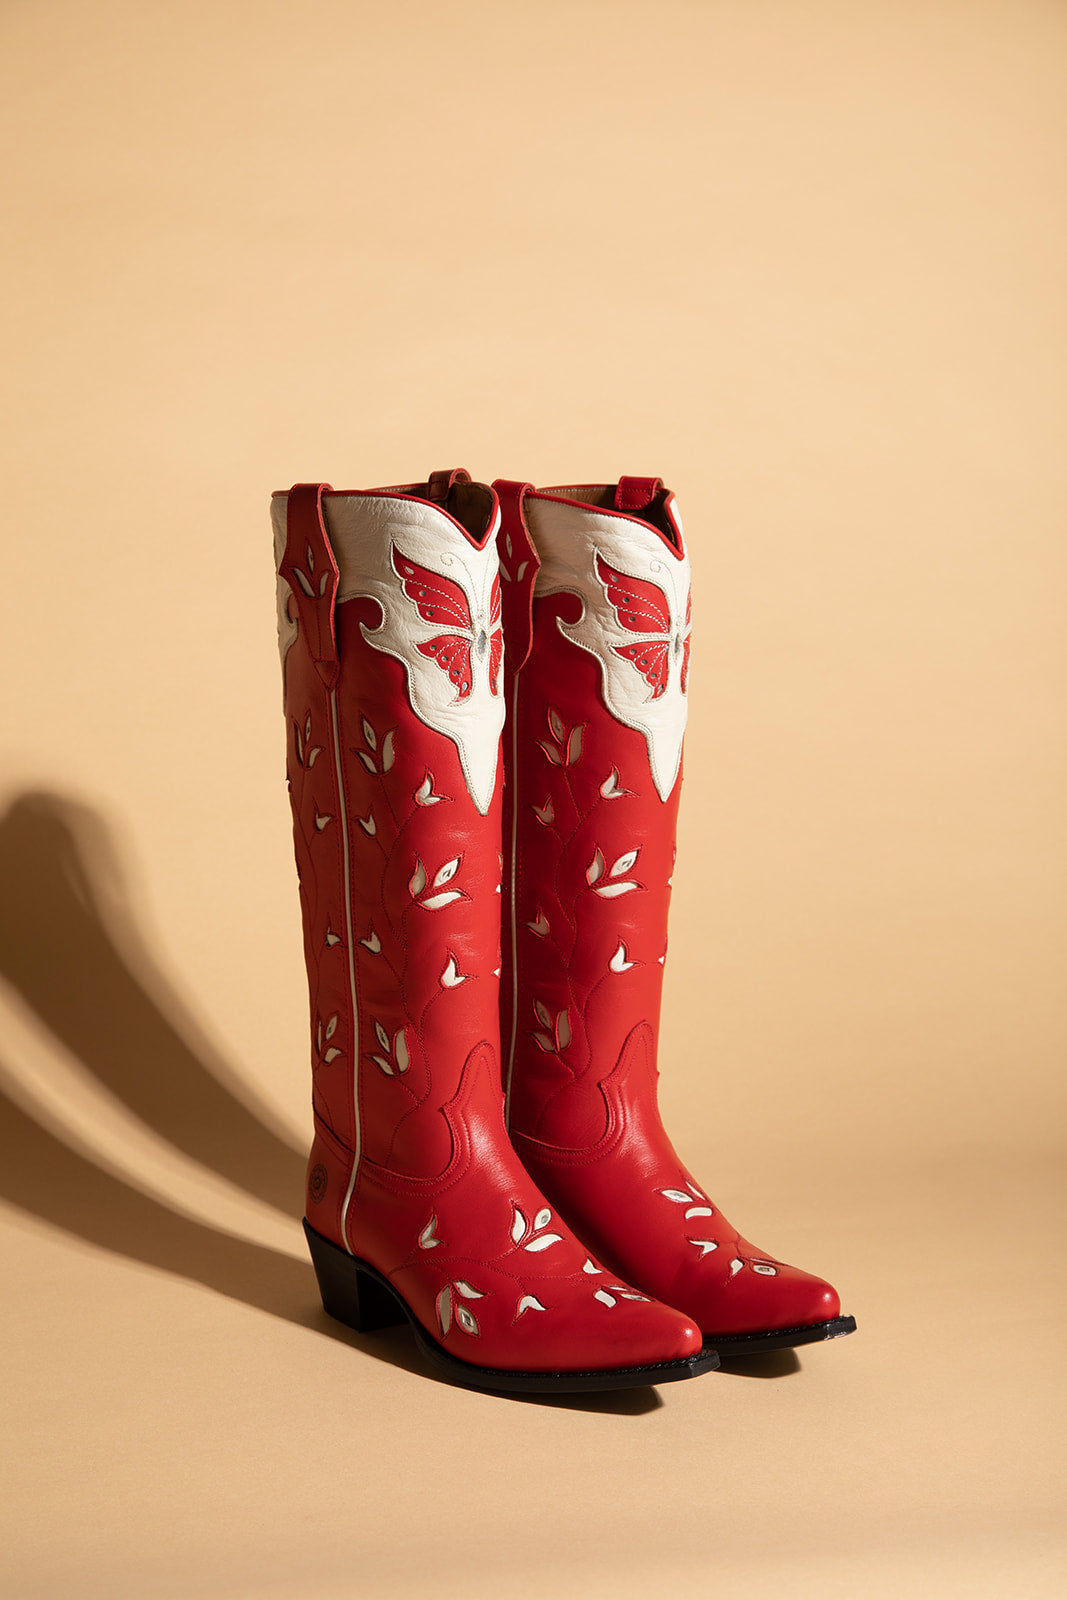 Ranch Road Boots - Scarlett Butterfly - Women's Western Boots